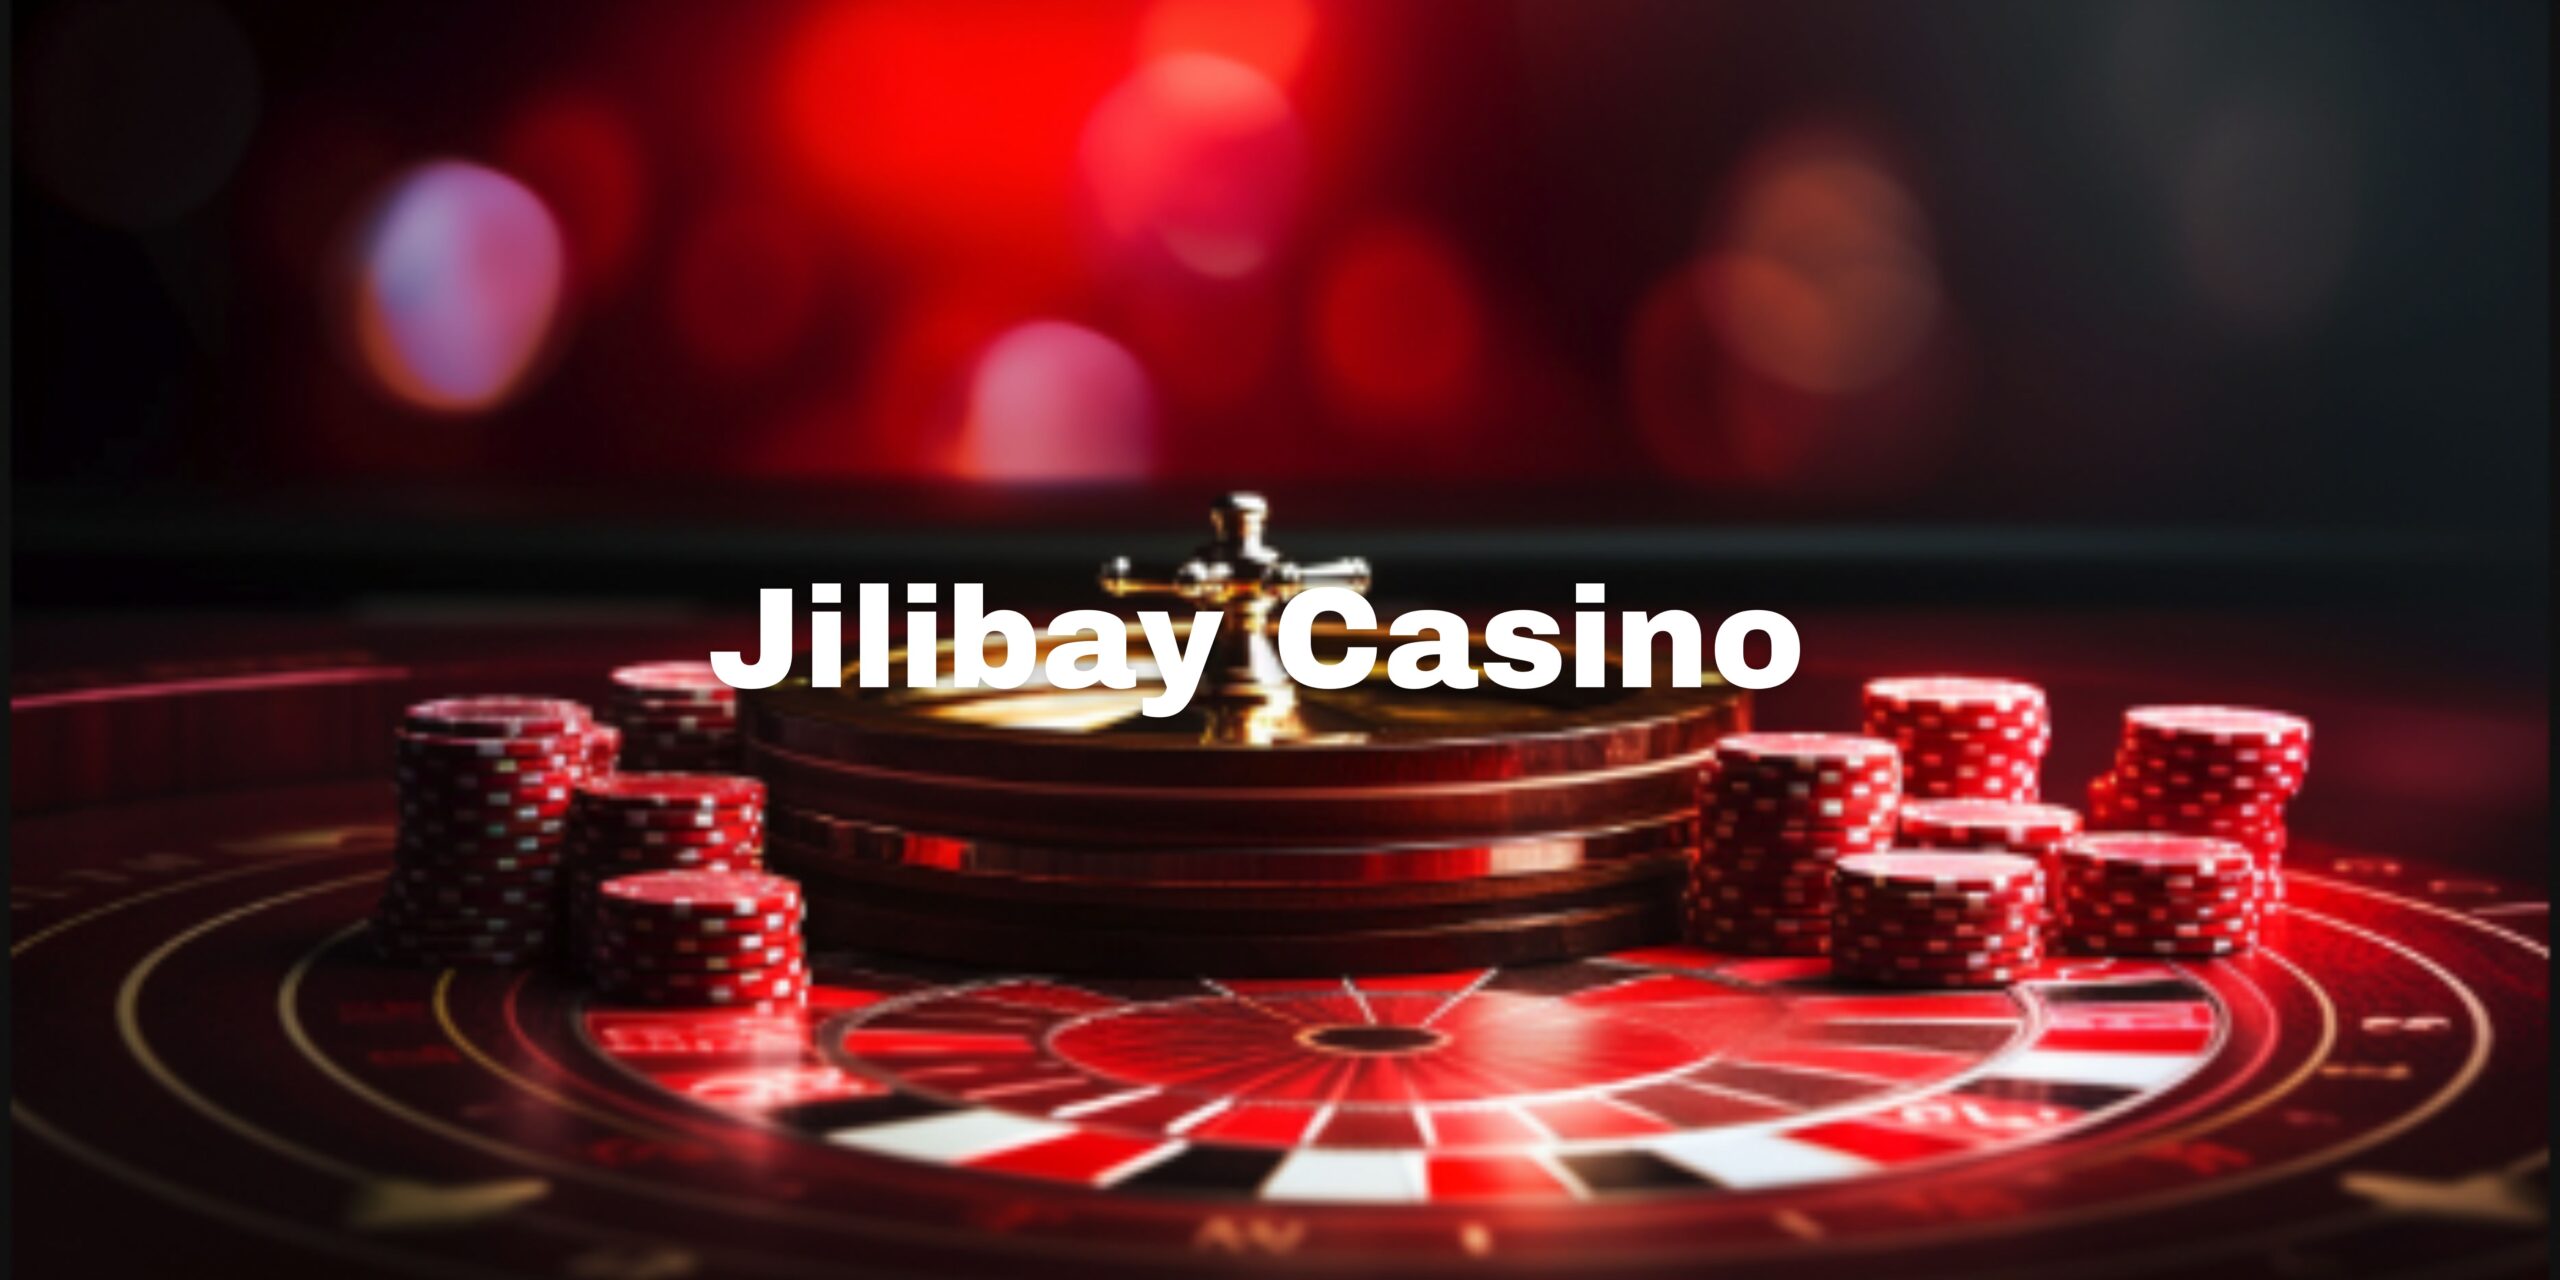 Jilibay Casino